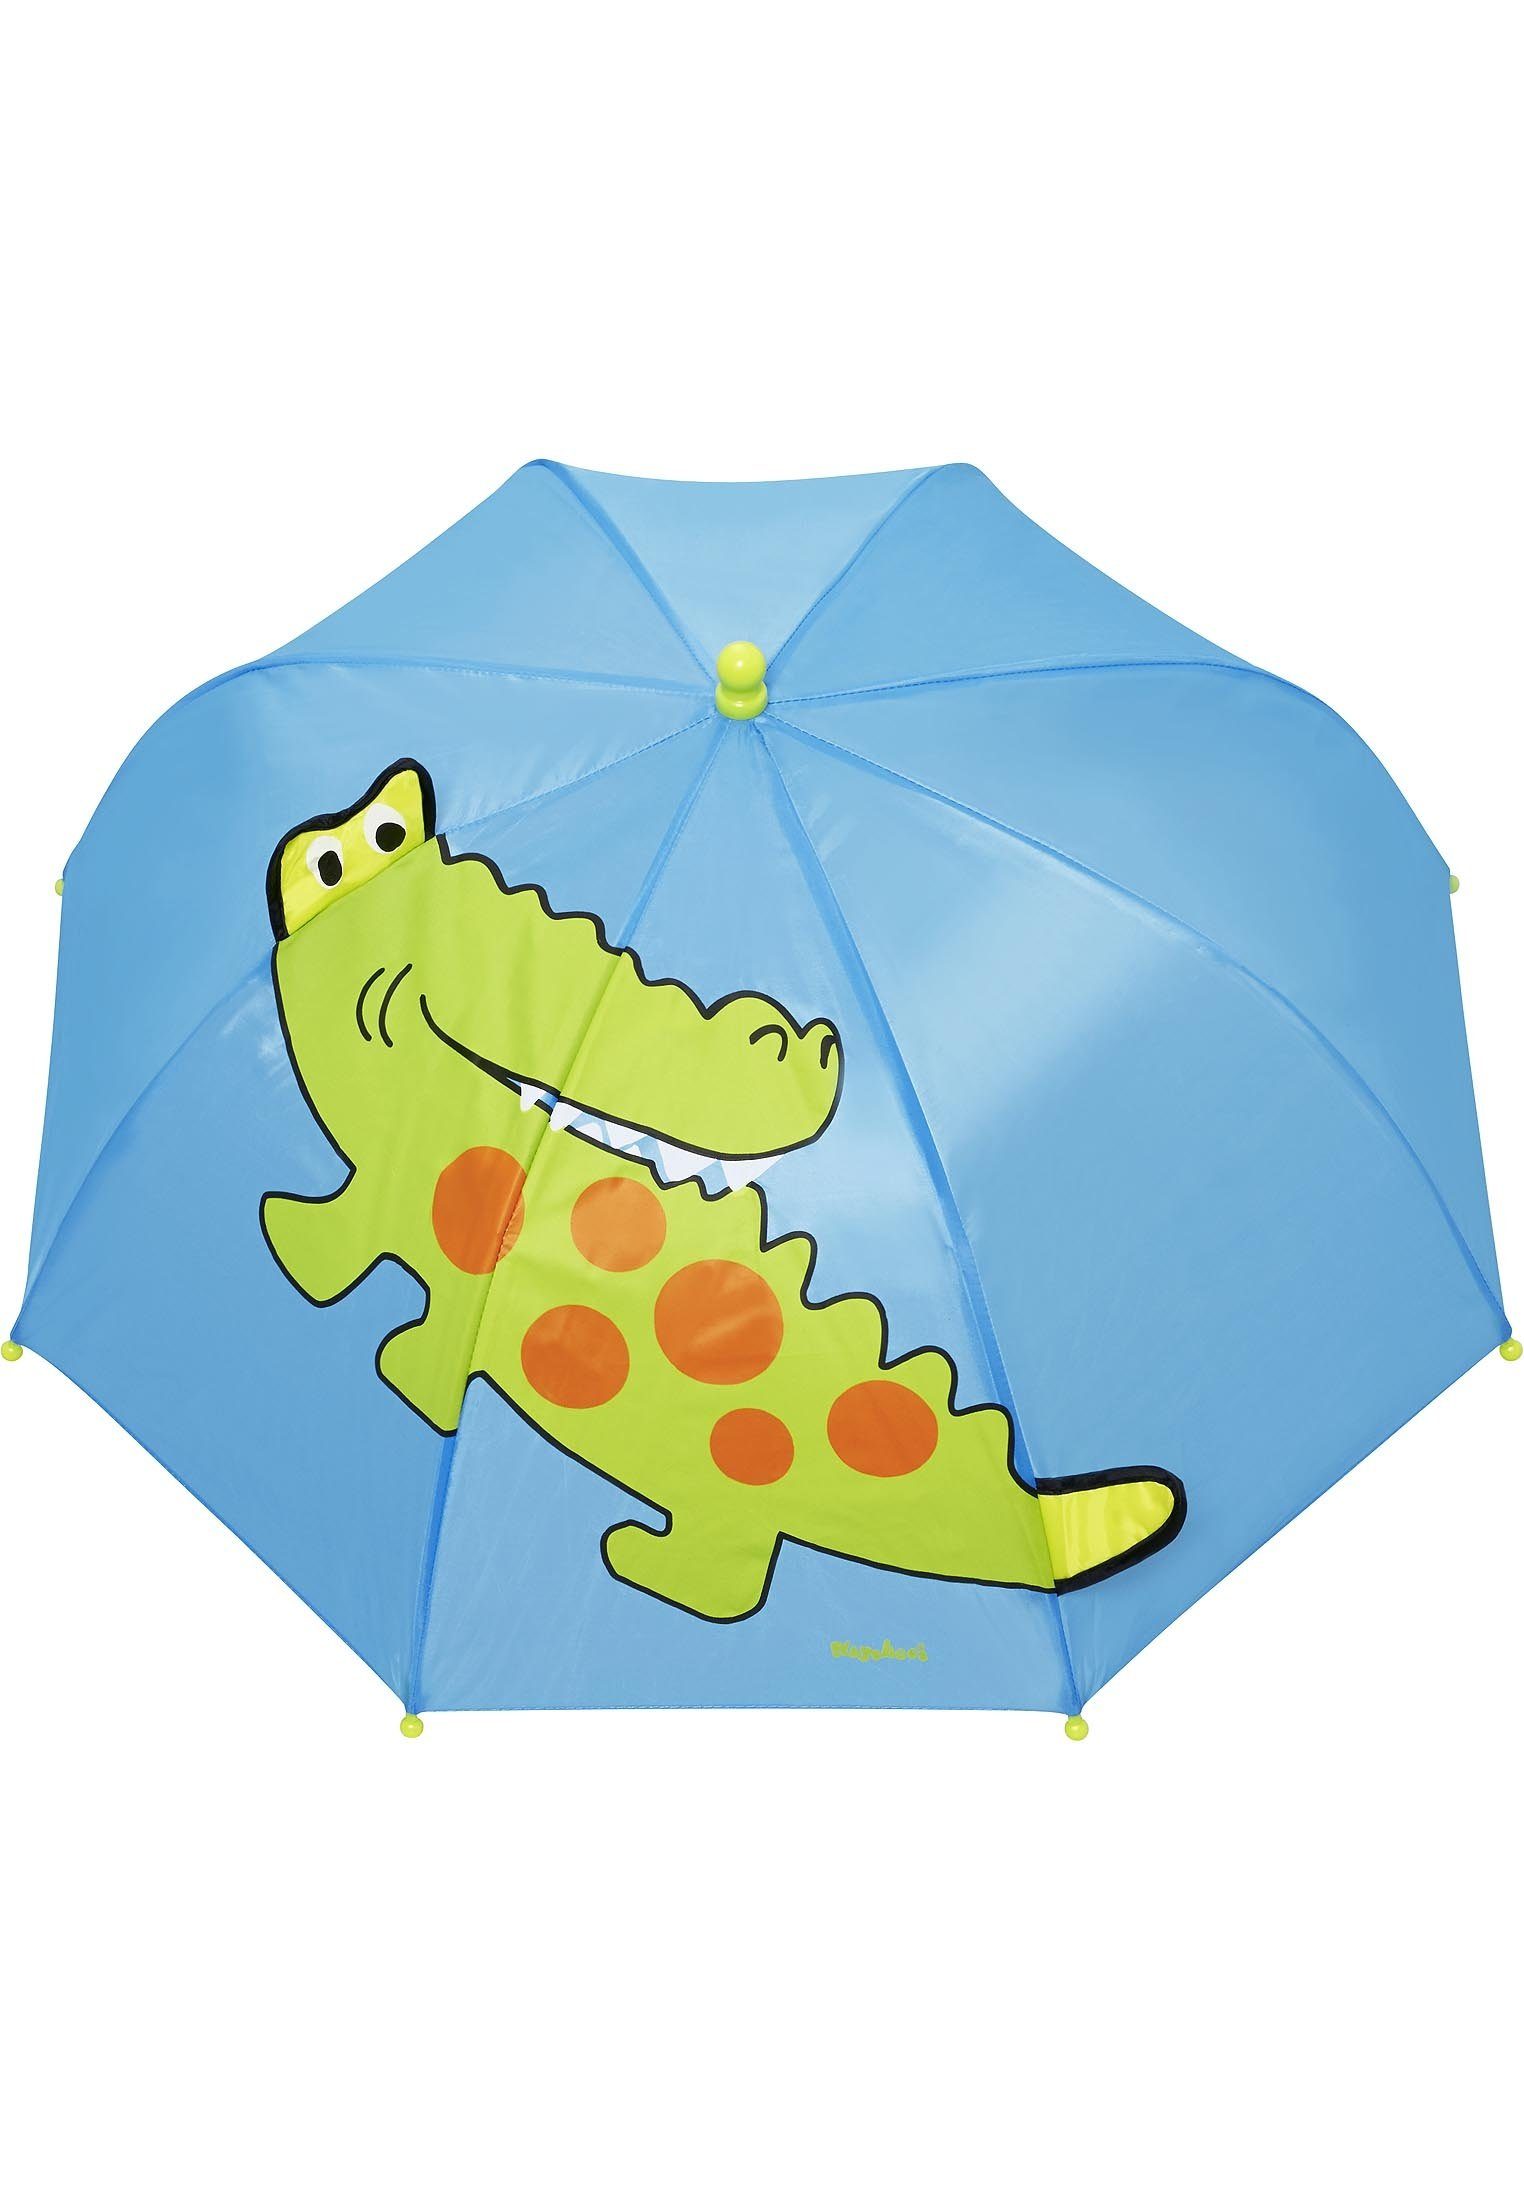 Playshoes Krokodil Stockregenschirm Regenschirm